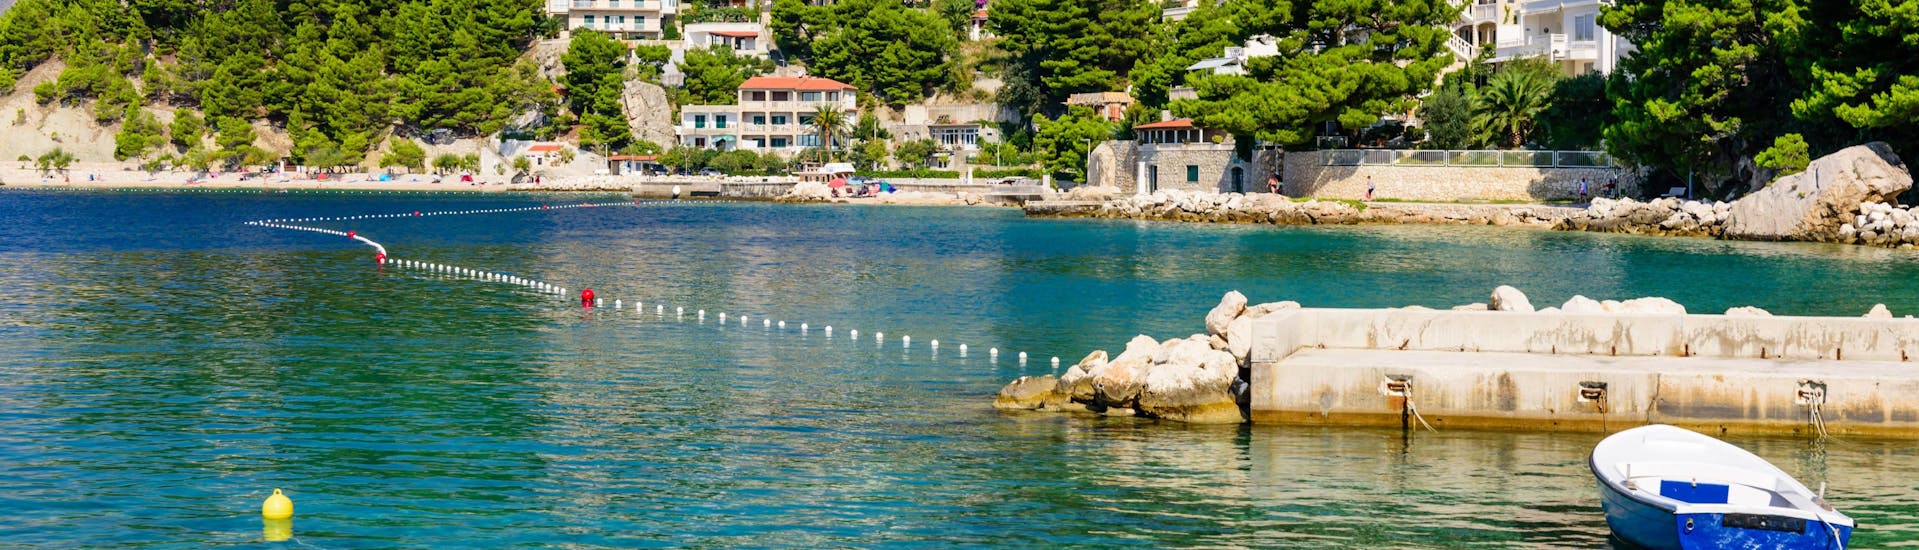 Eine Freundesgruppe macht eine Bootstour in der Urlaubsregion Makarska Riviera.